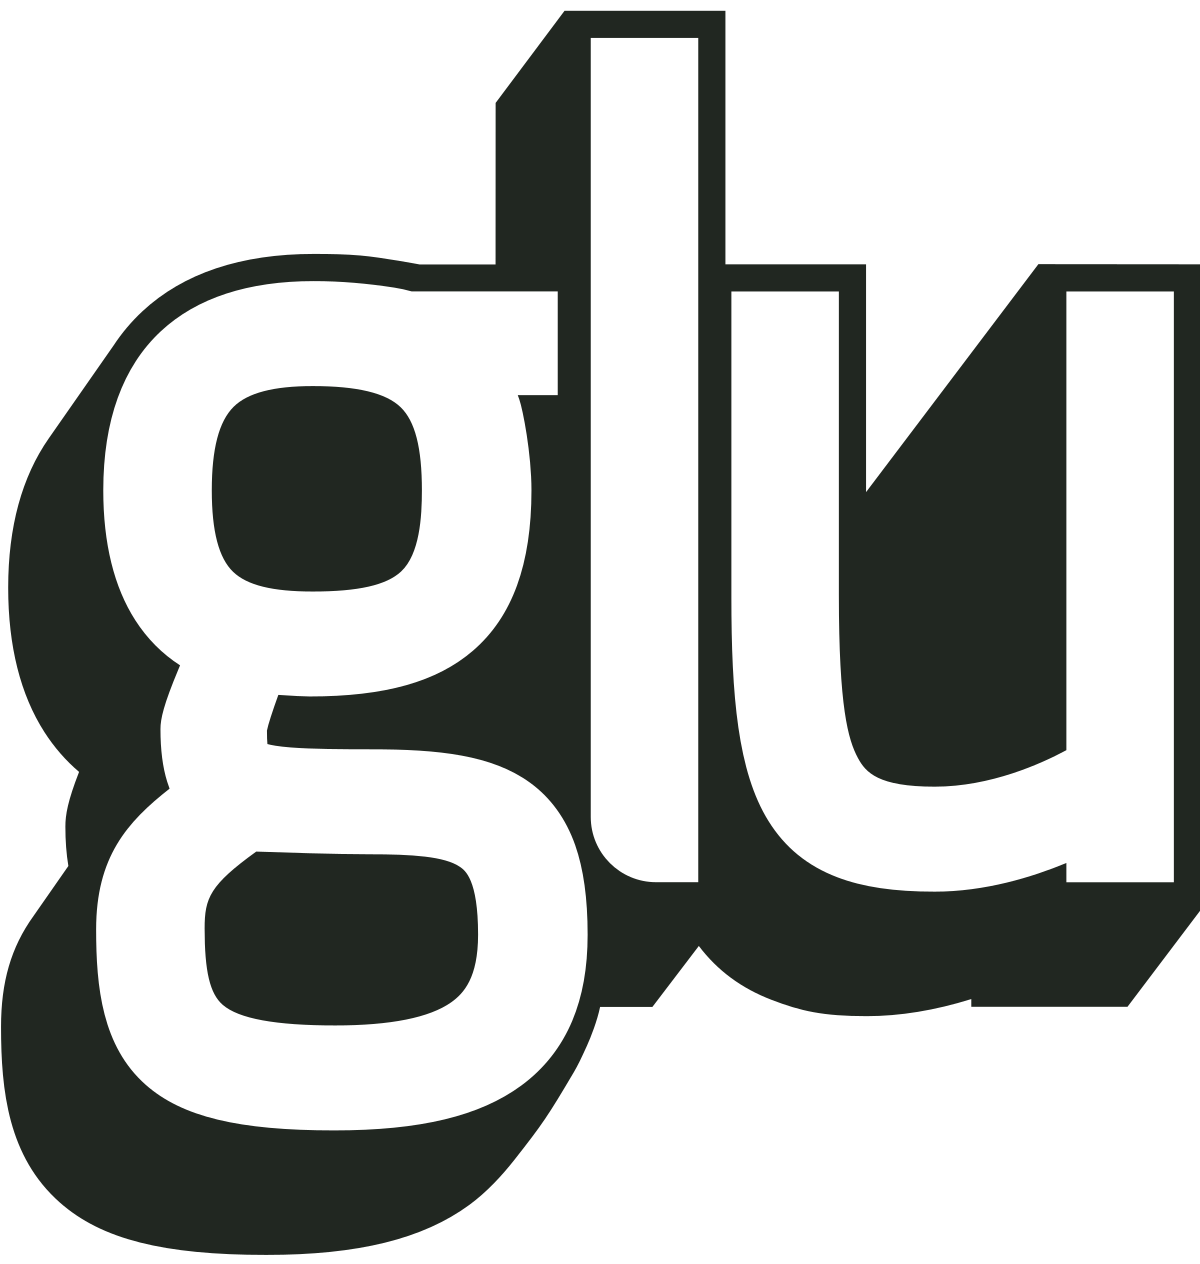 Glu Mobile - Wikipedia